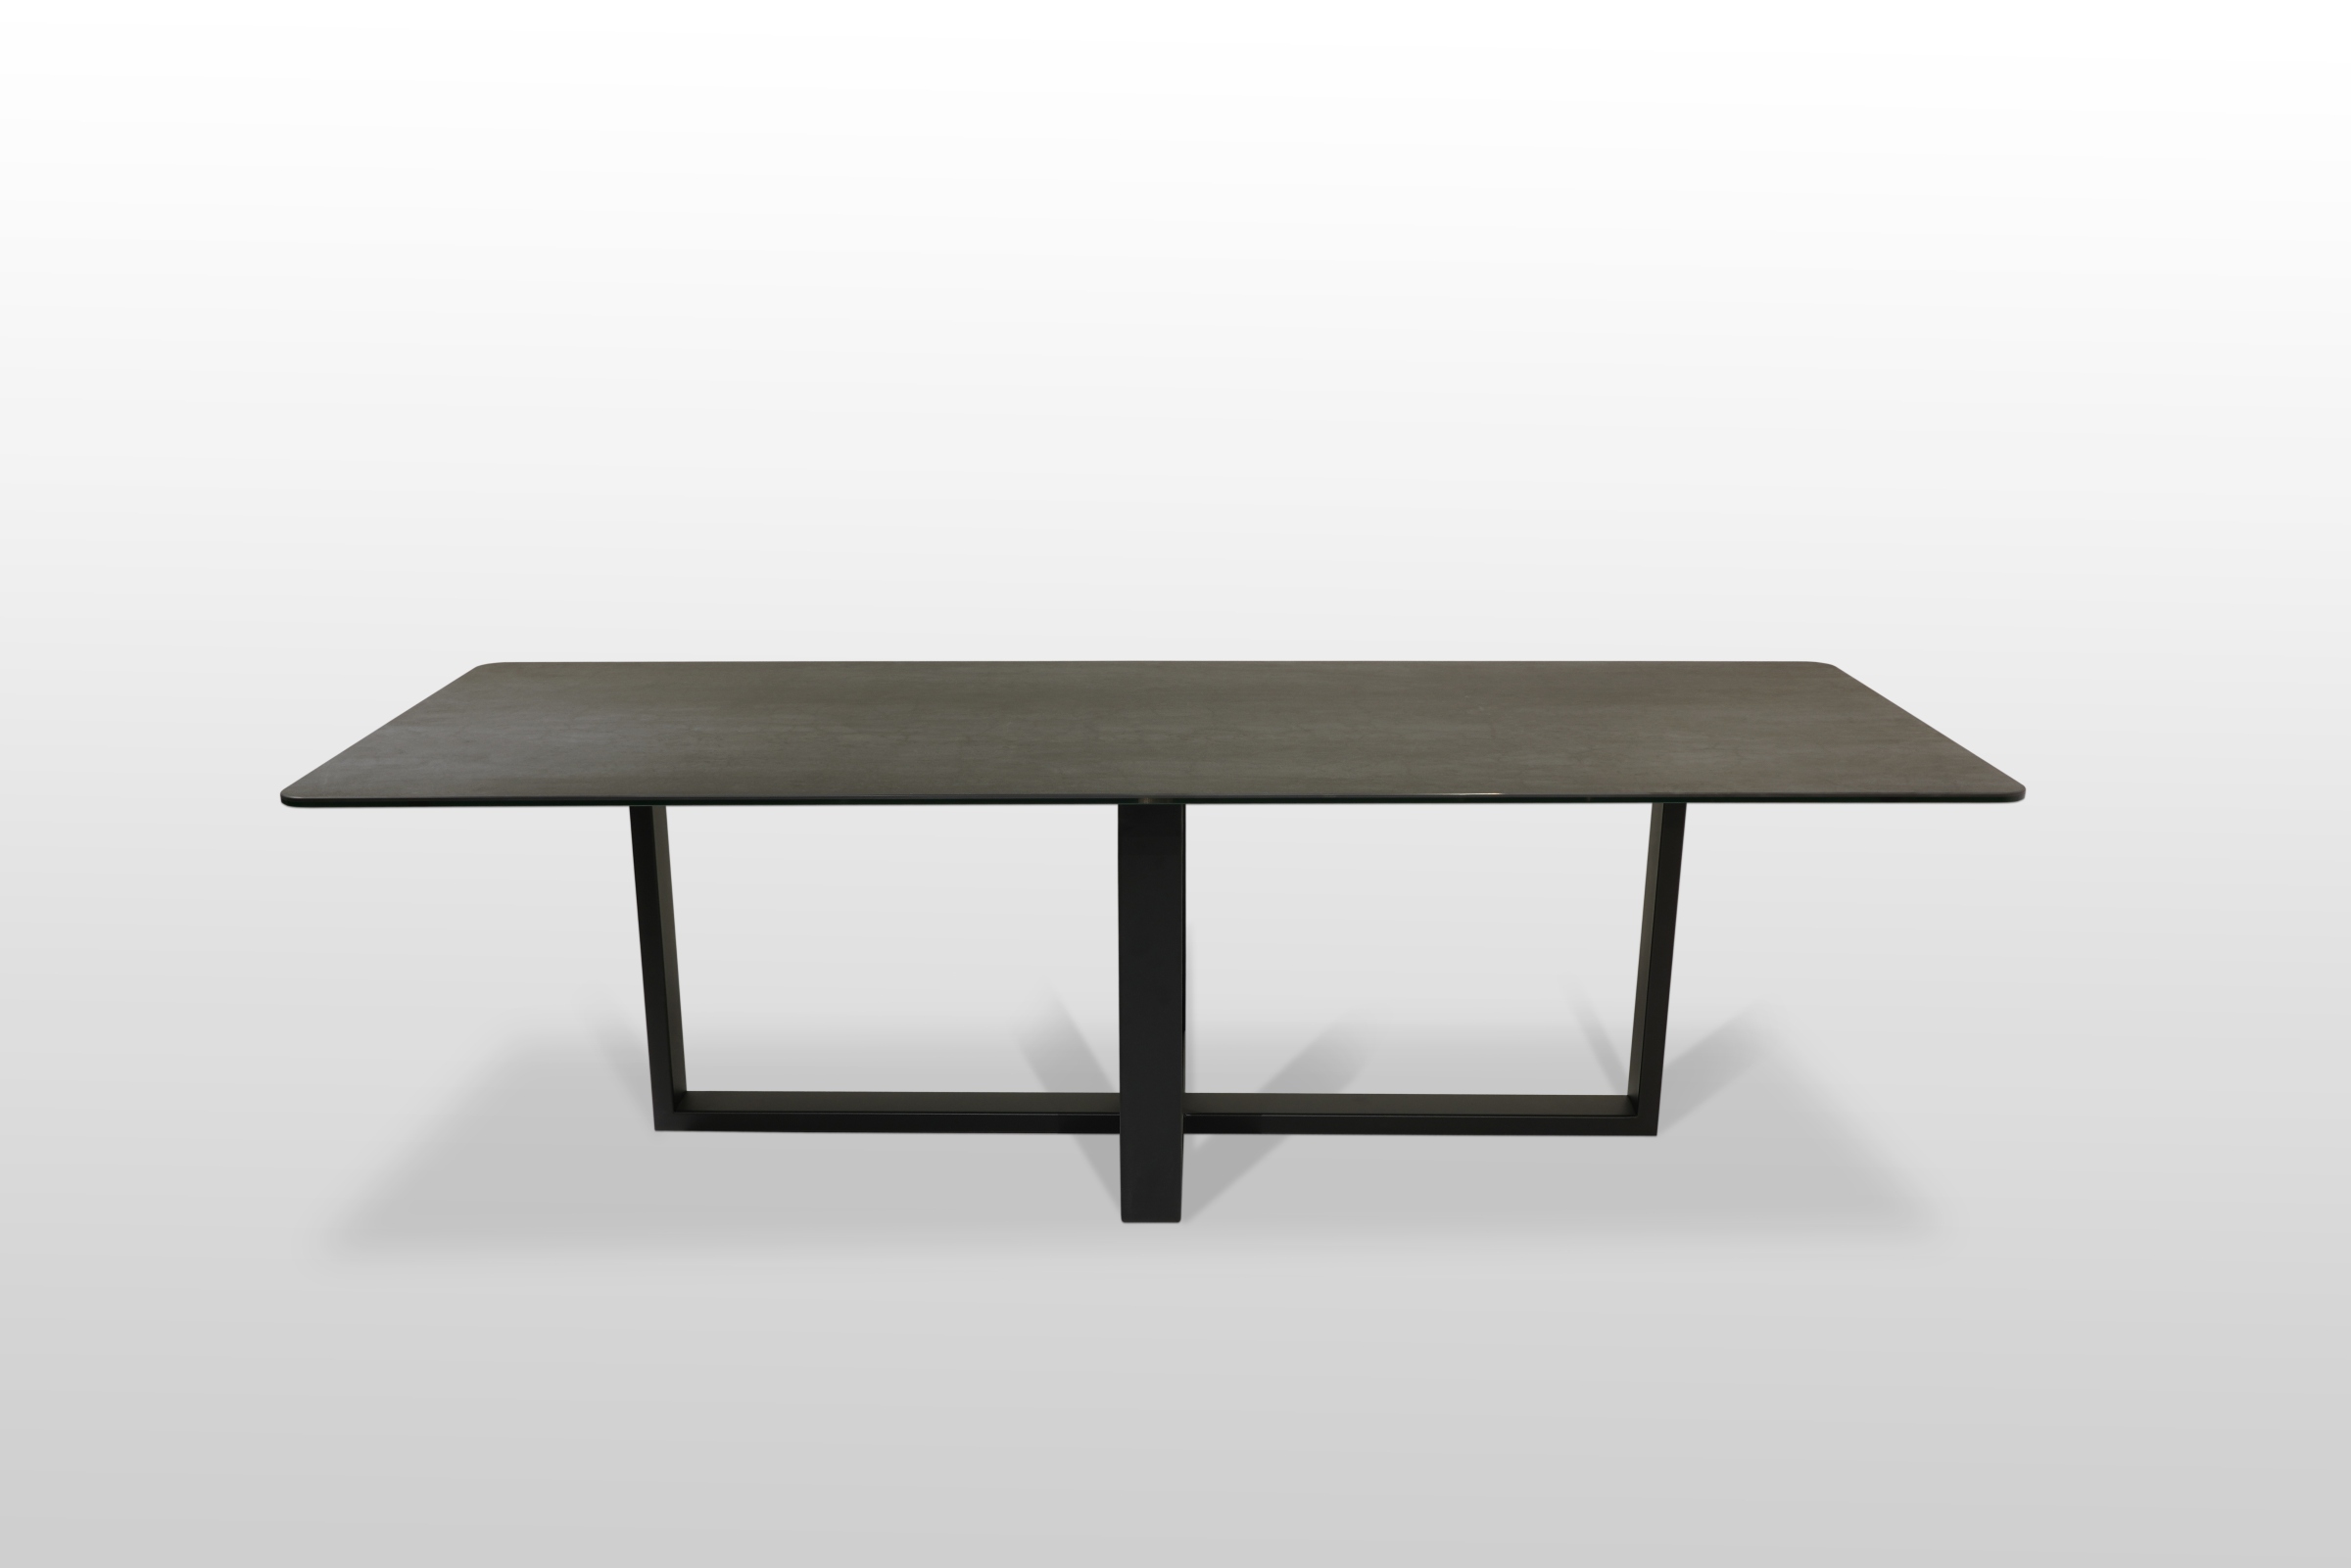 Stół nierozkładany ze spiekoweym blatem klejonym na szkle usytułowany na metalowej czarnej ramie